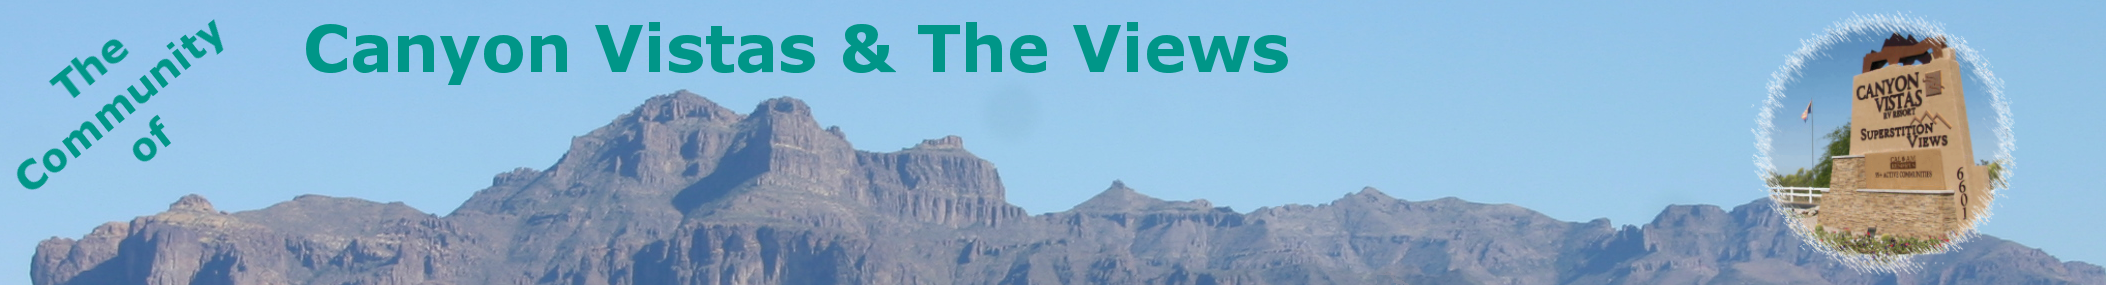 CV & The Views